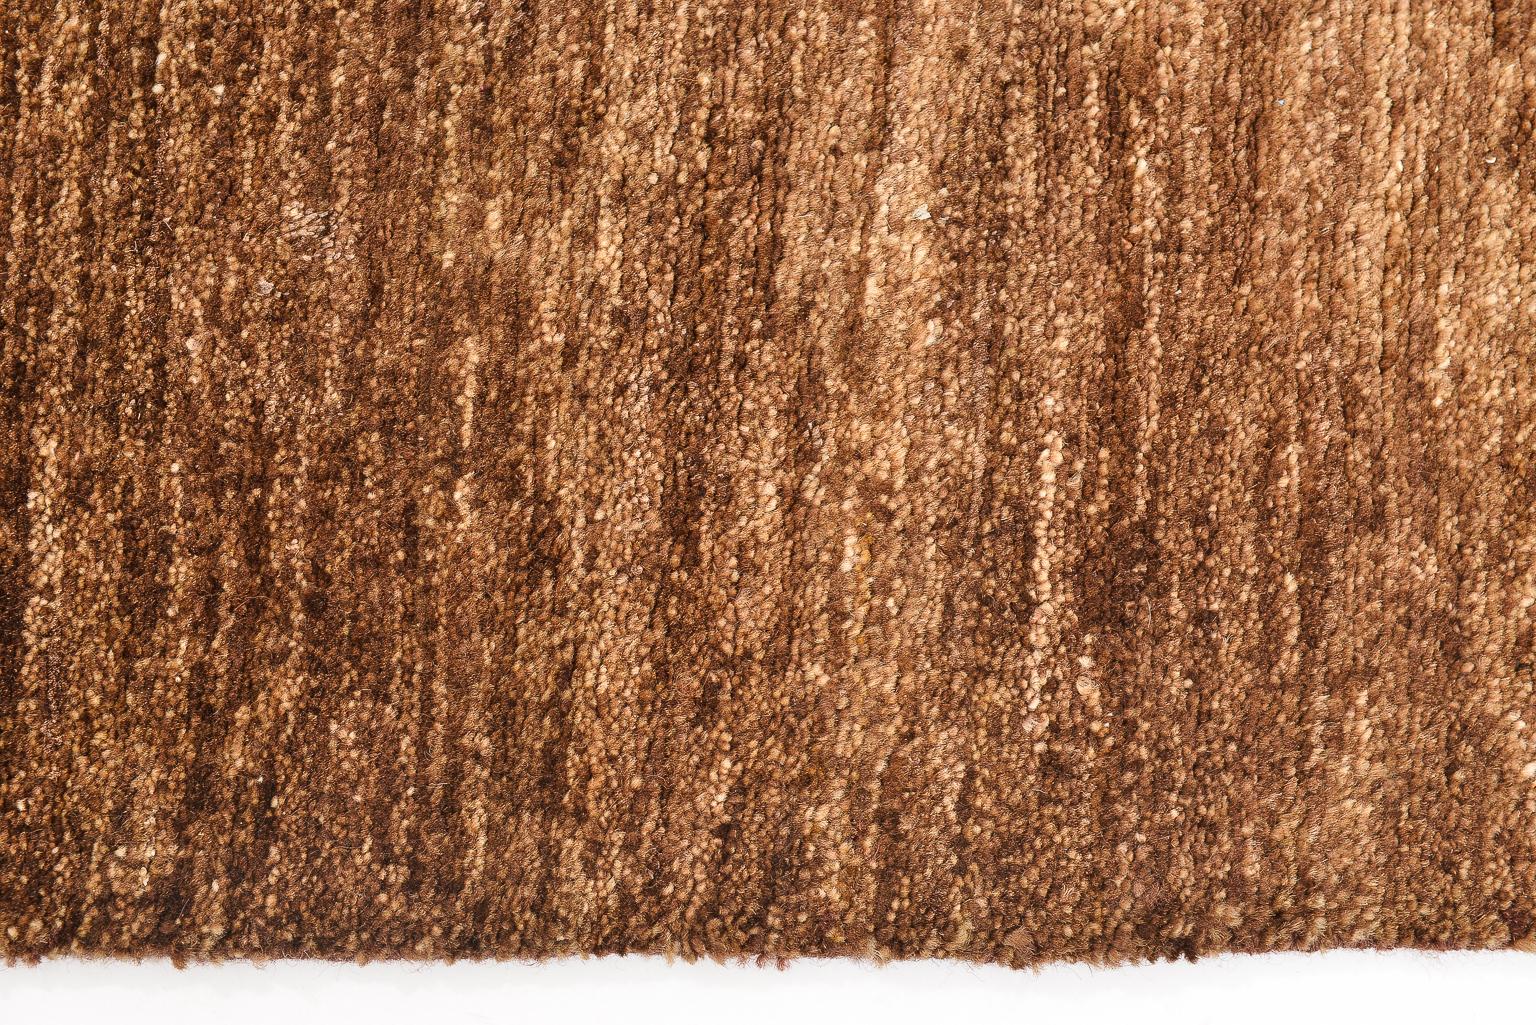 Wool Minimalist  Modern Brown Afghan Carpet or Rug For Sale